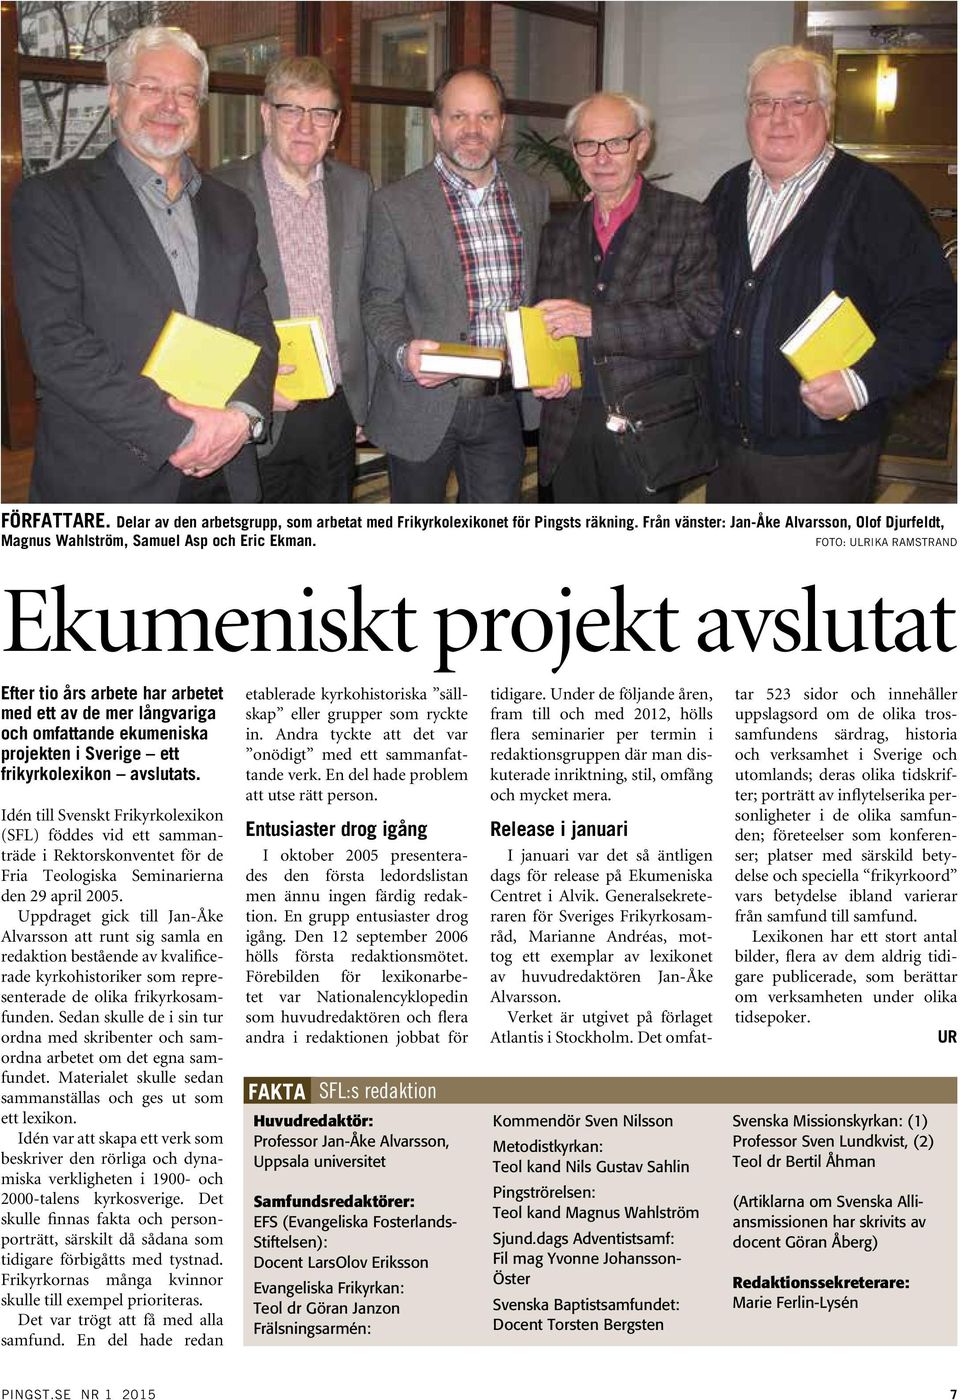 Idén till Svenskt Frikyrkolexikon (SFL) föddes vid ett sammanträde i Rektorskonventet för de Fria Teologiska Seminarierna den 29 april 2005.